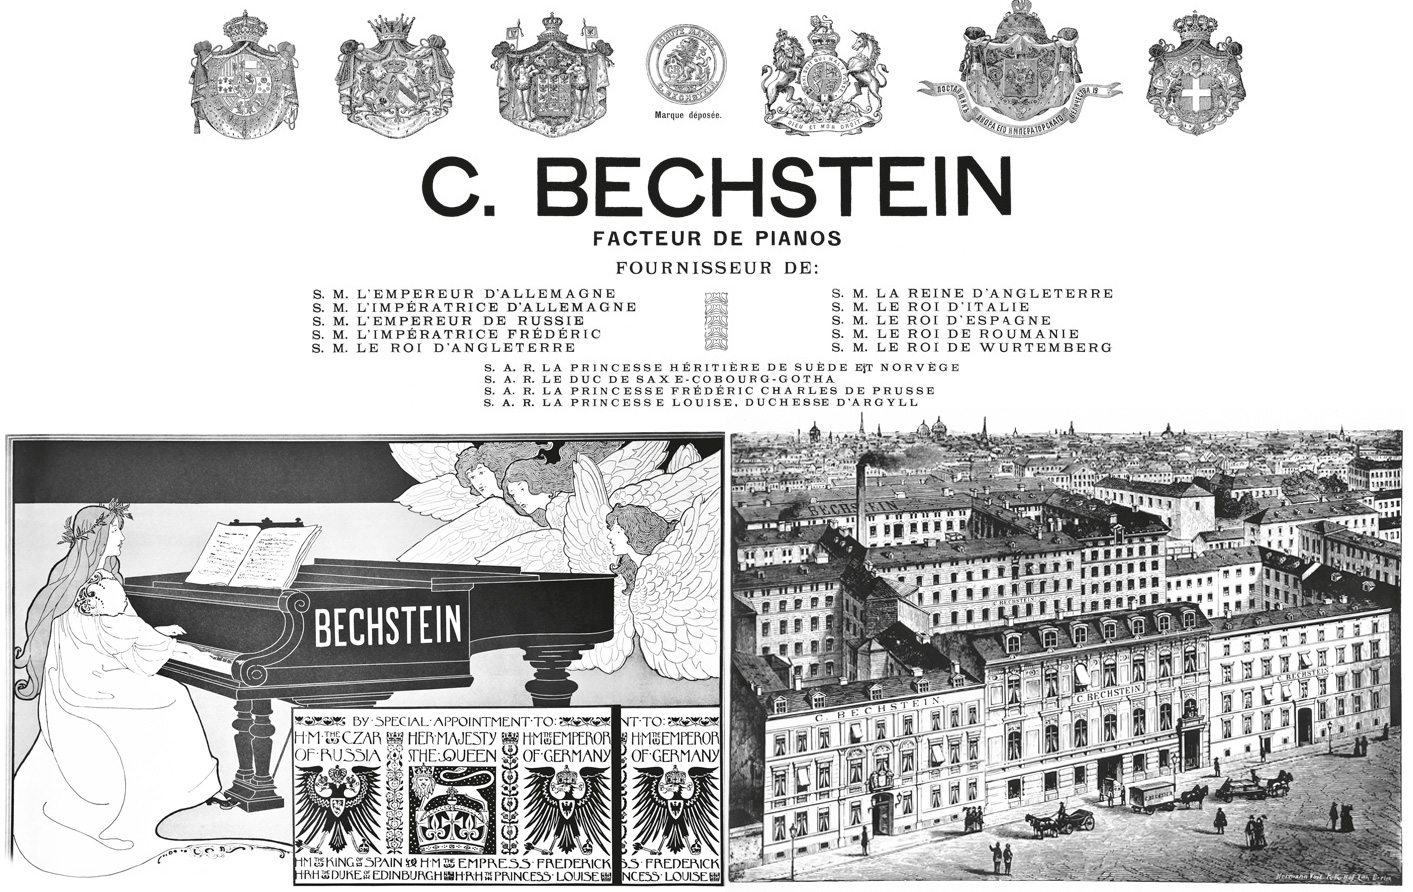 Dan-piano-grand-bechstein-concert-a192